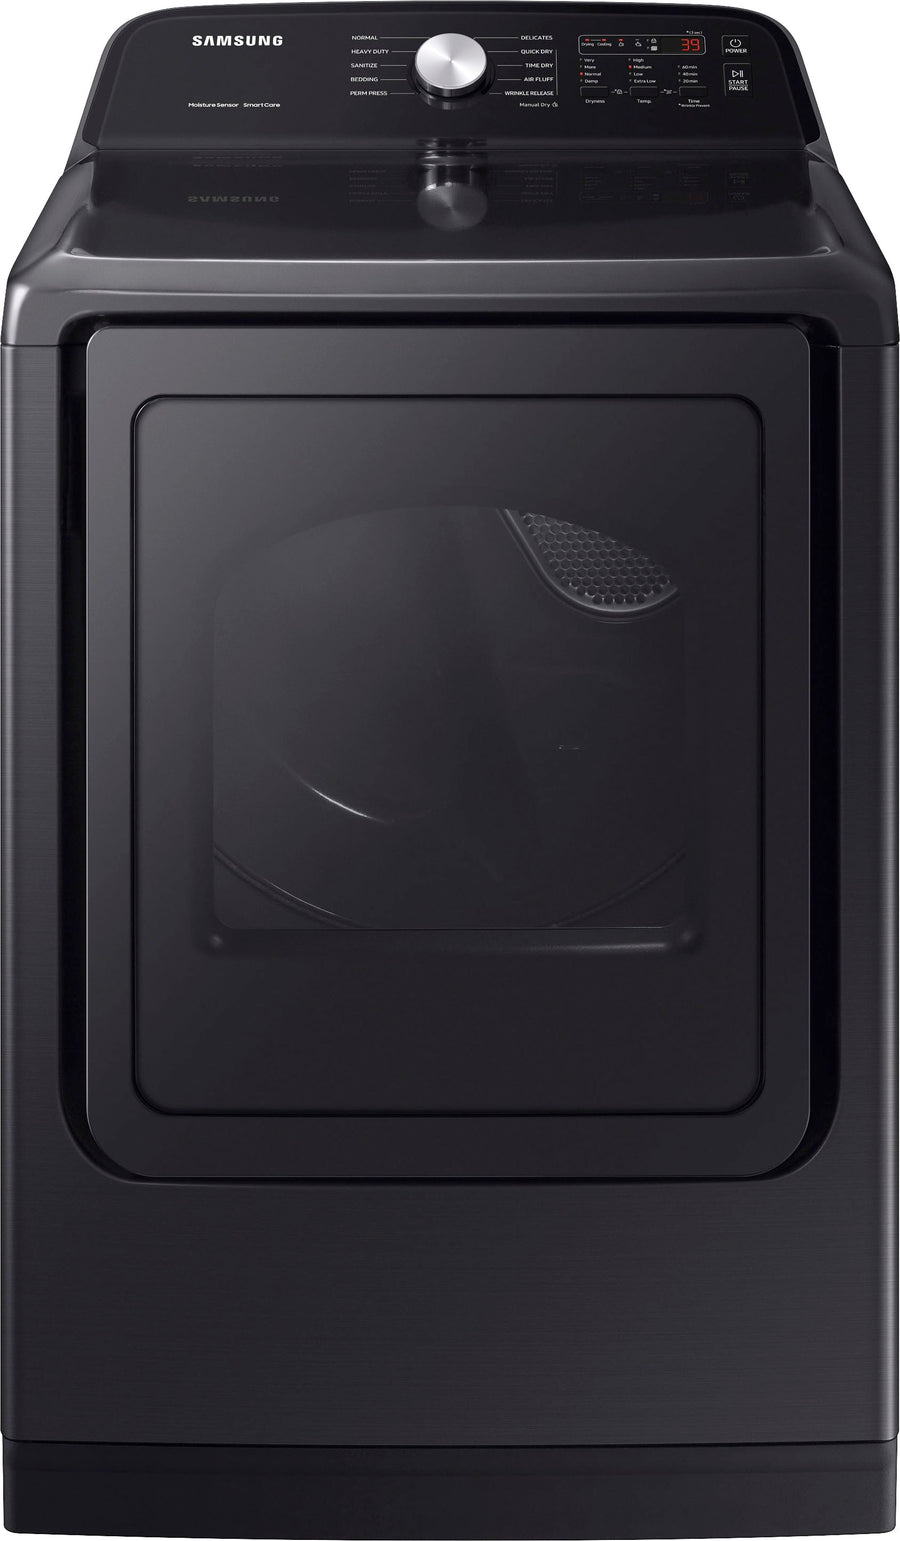 Samsung - 7.4 cu. ft. Gas Dryer with Sensor Dry - Brushed black_0